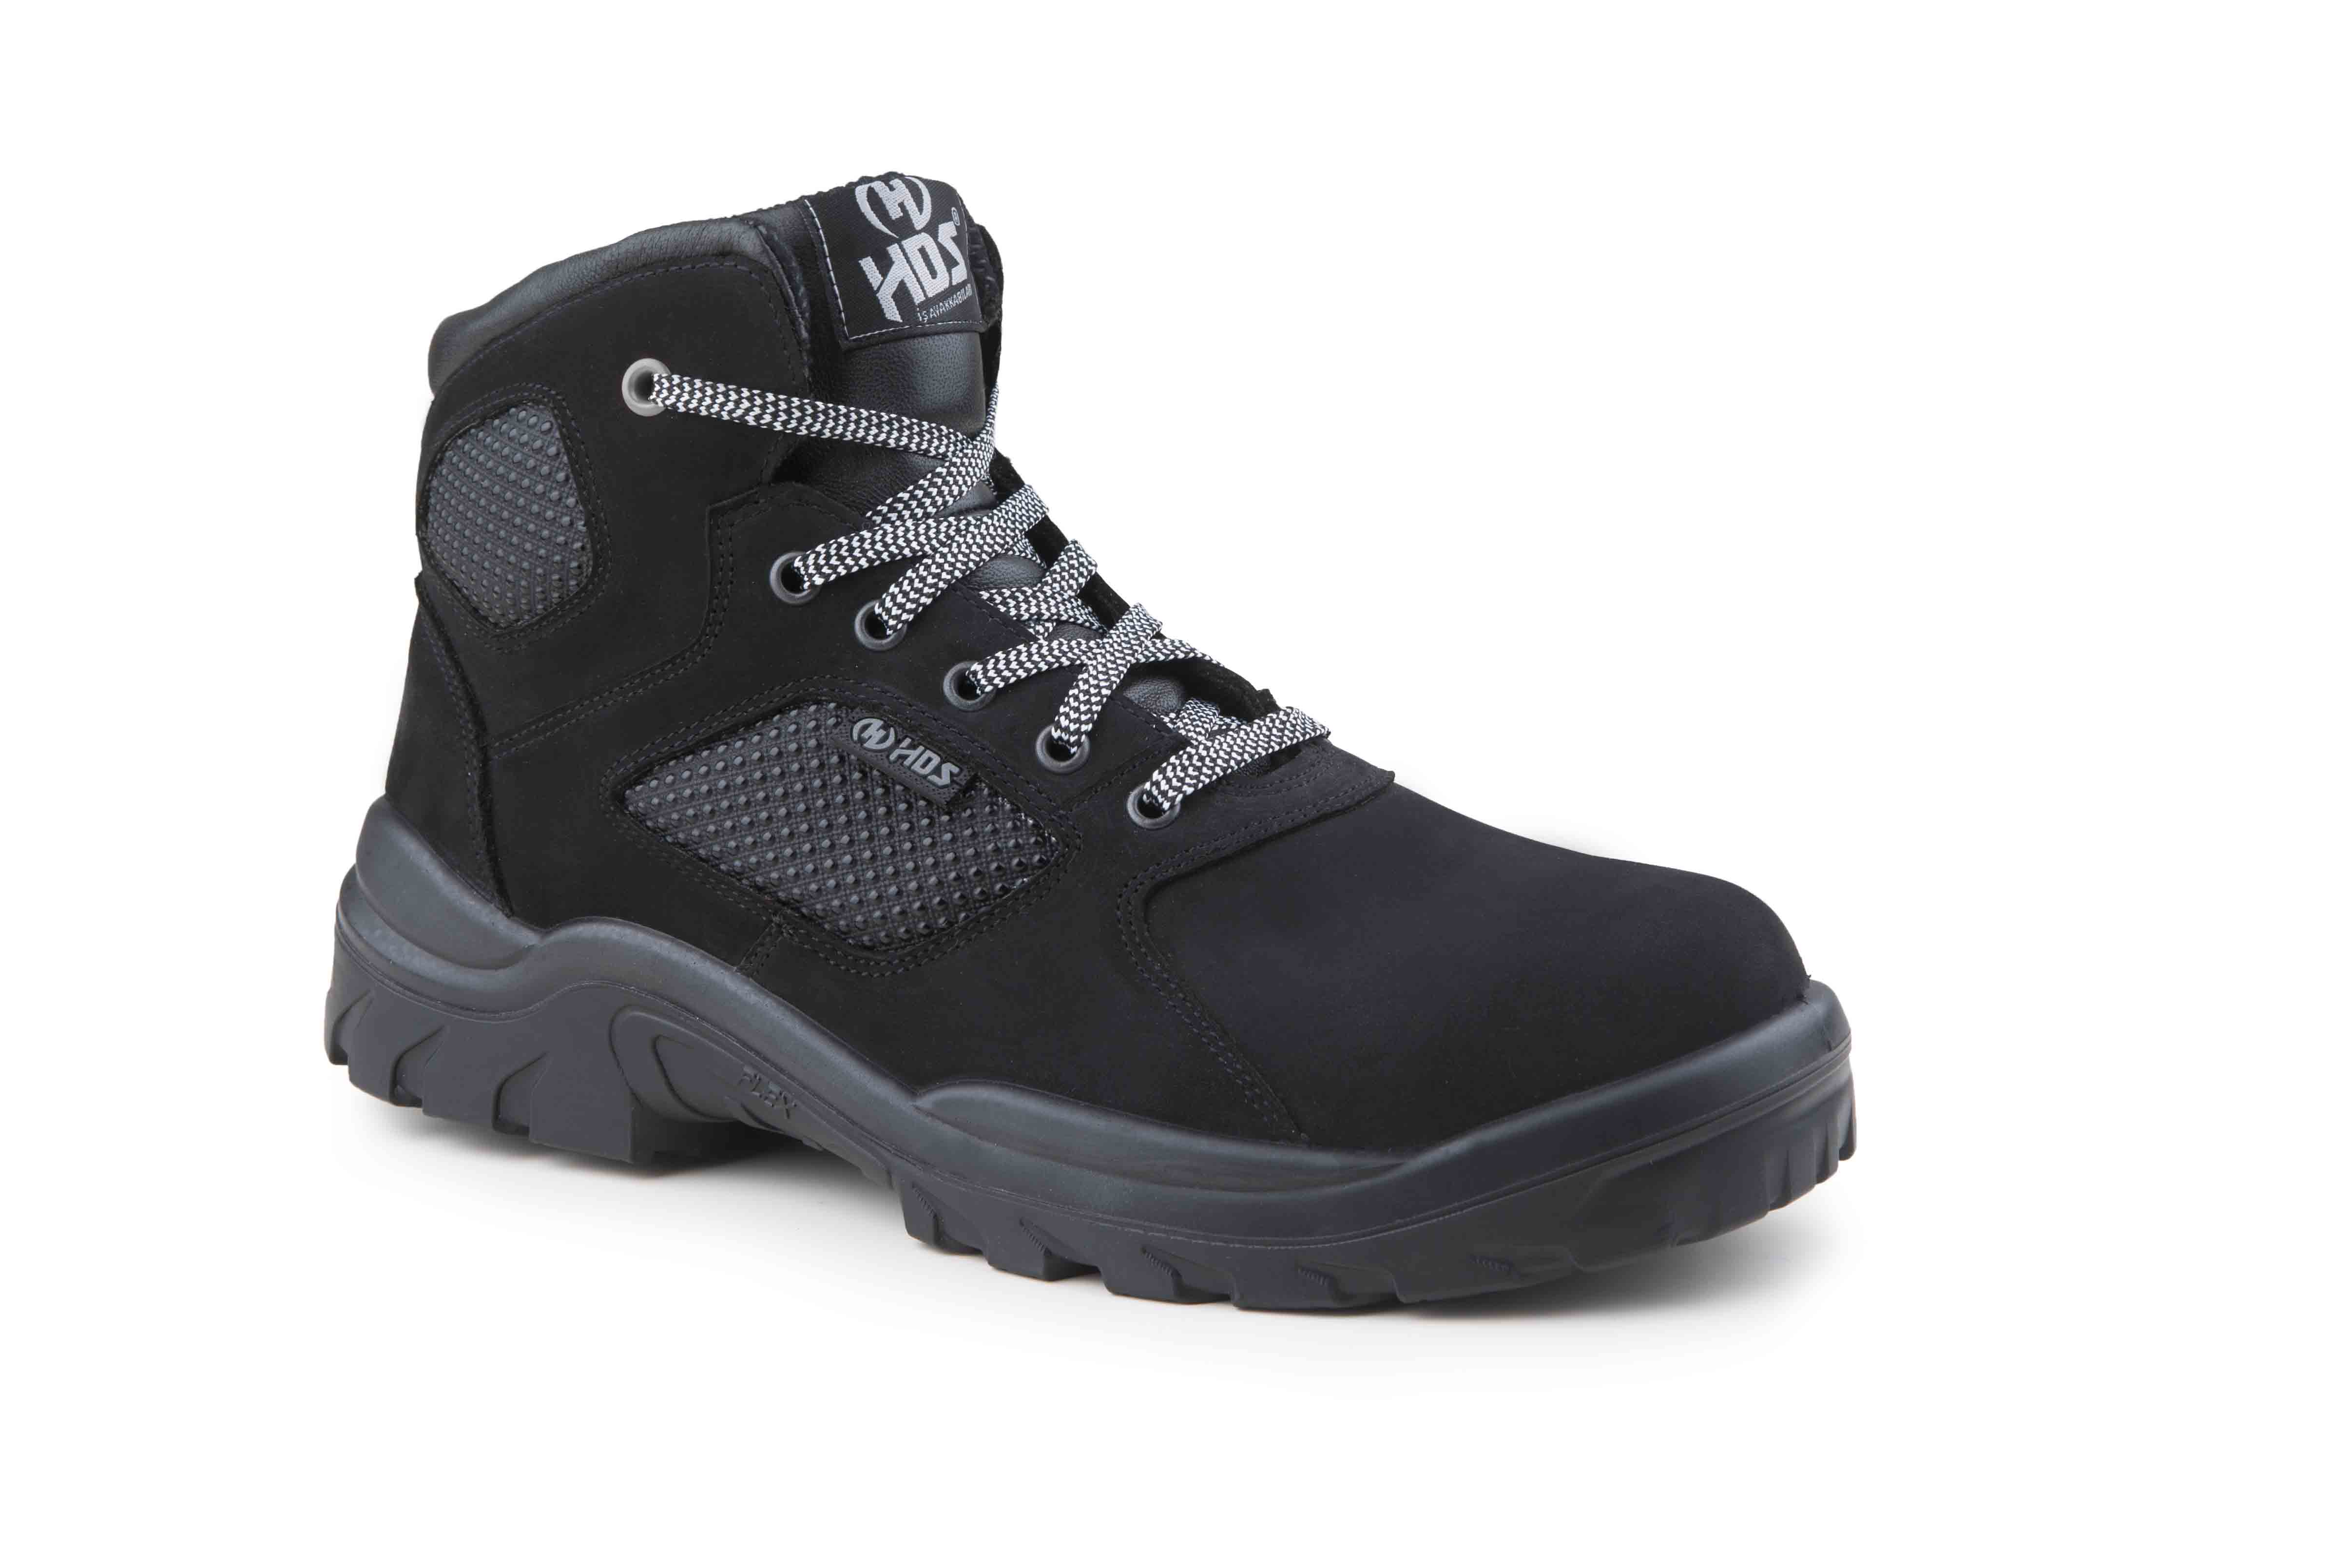 HDS İş Güvenlik Ayakkabıları, Flx Trole Modelleri